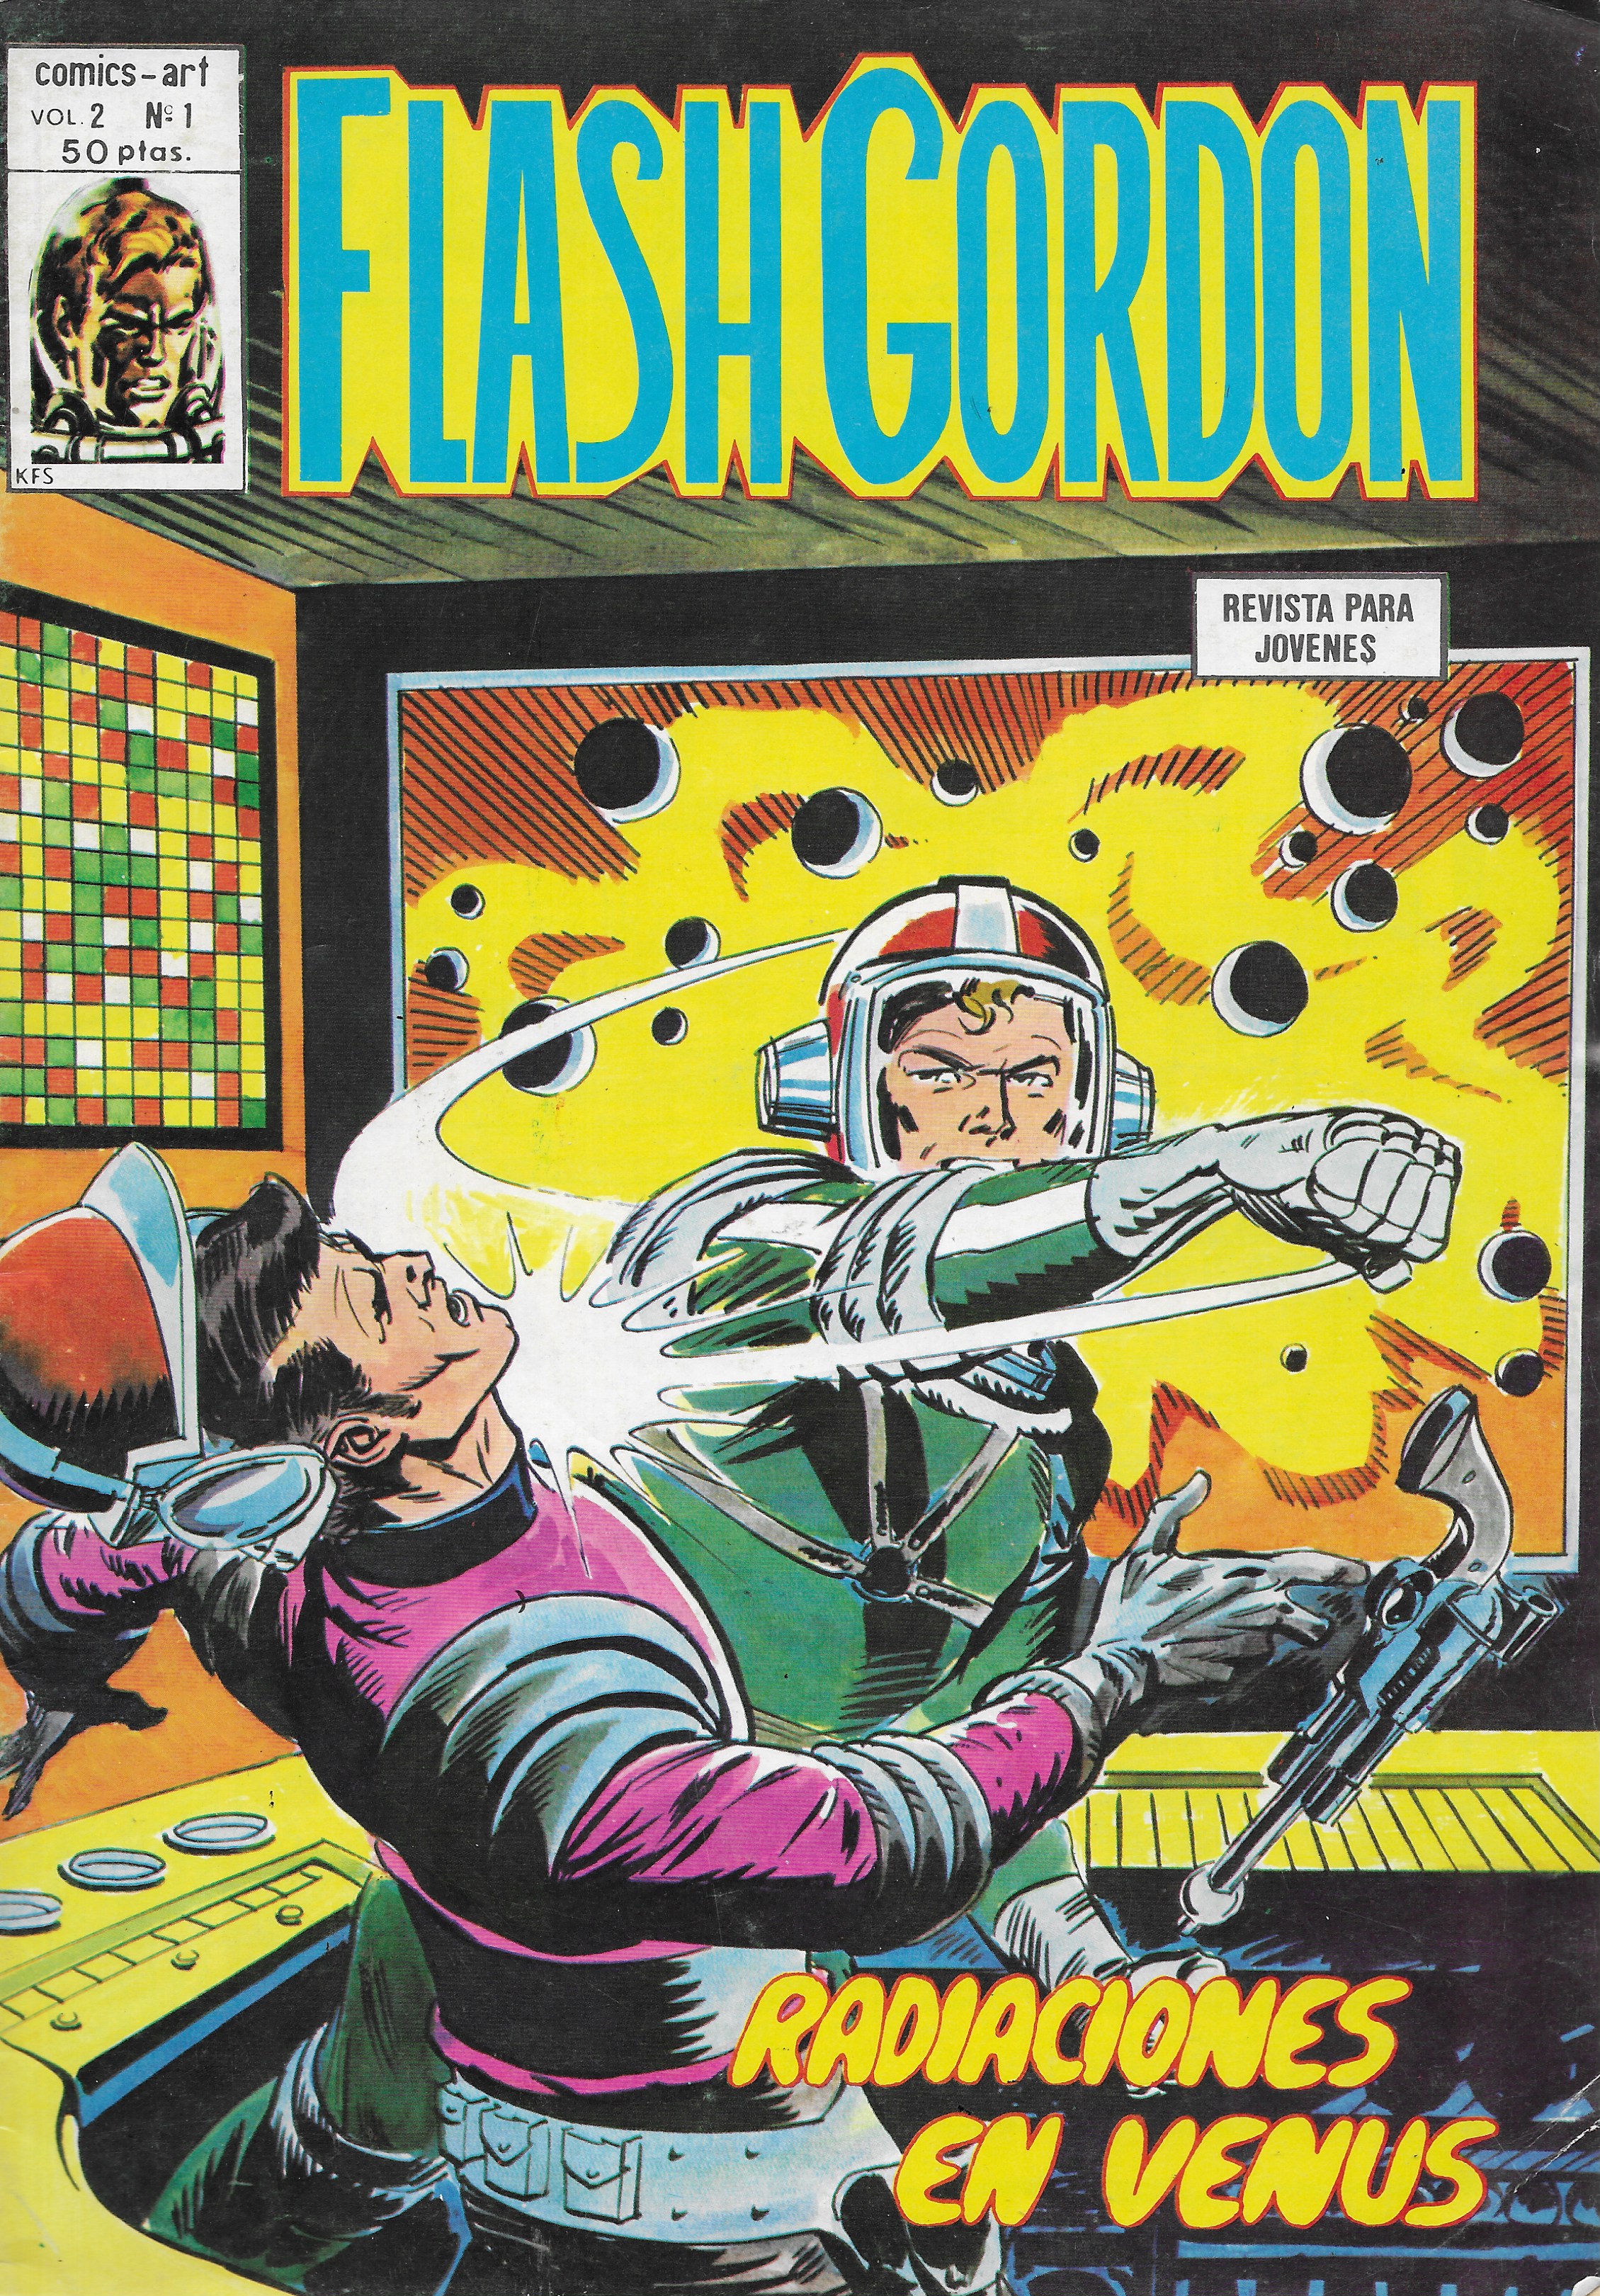 Flash Gordon v2. Vértice 1980. Colección completa (44 Ejemplares)